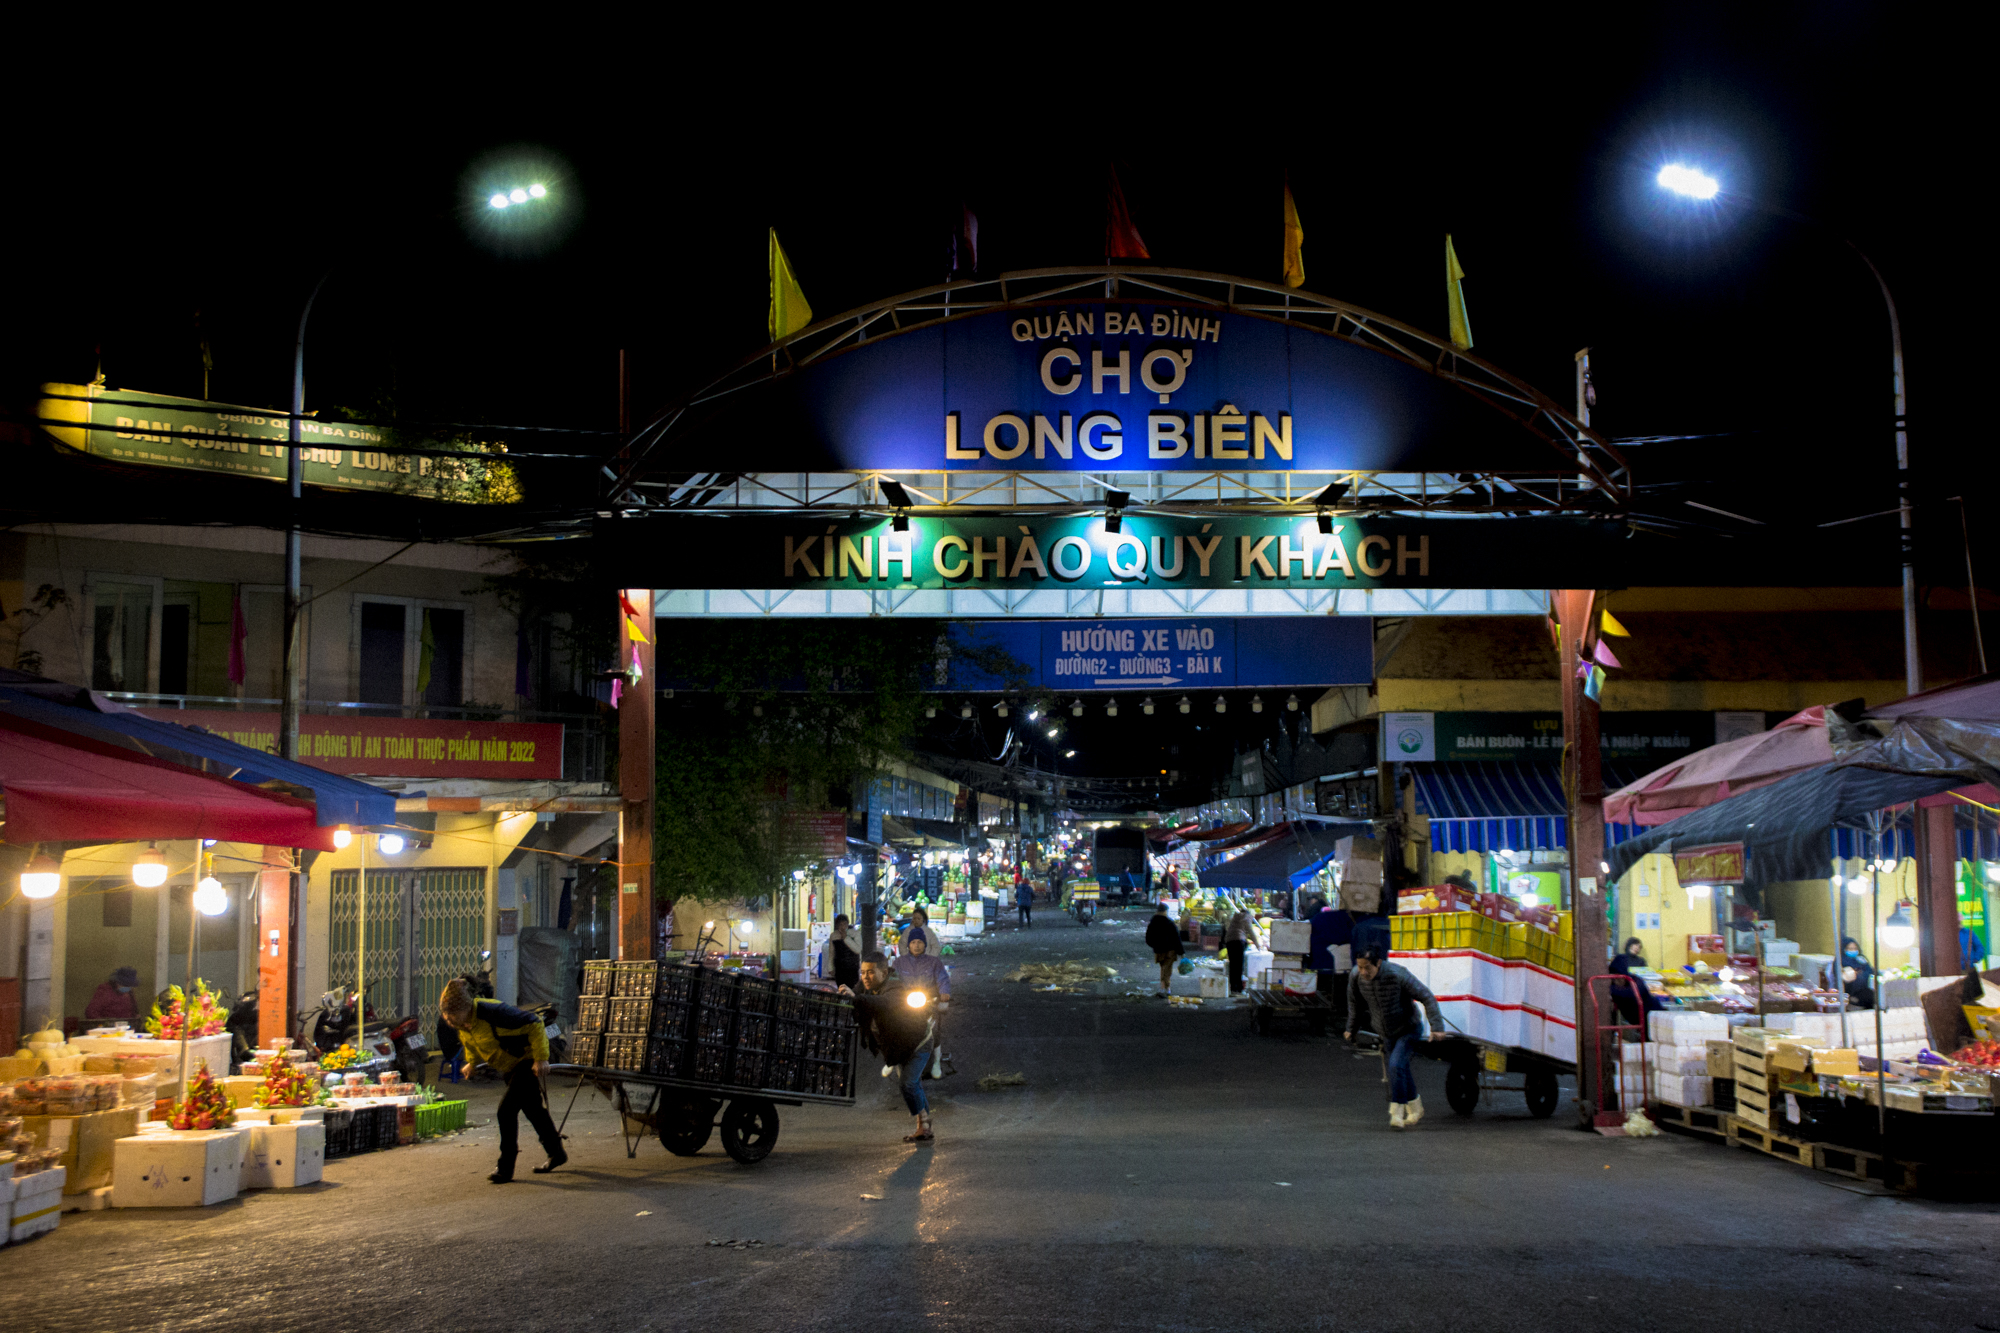 Cửu vạn chợ đầu mối ở Hà Nội làm xuyên đêm những ngày rét mướt, khuân vác 300 kiện hàng mỗi ngày - Ảnh 1.